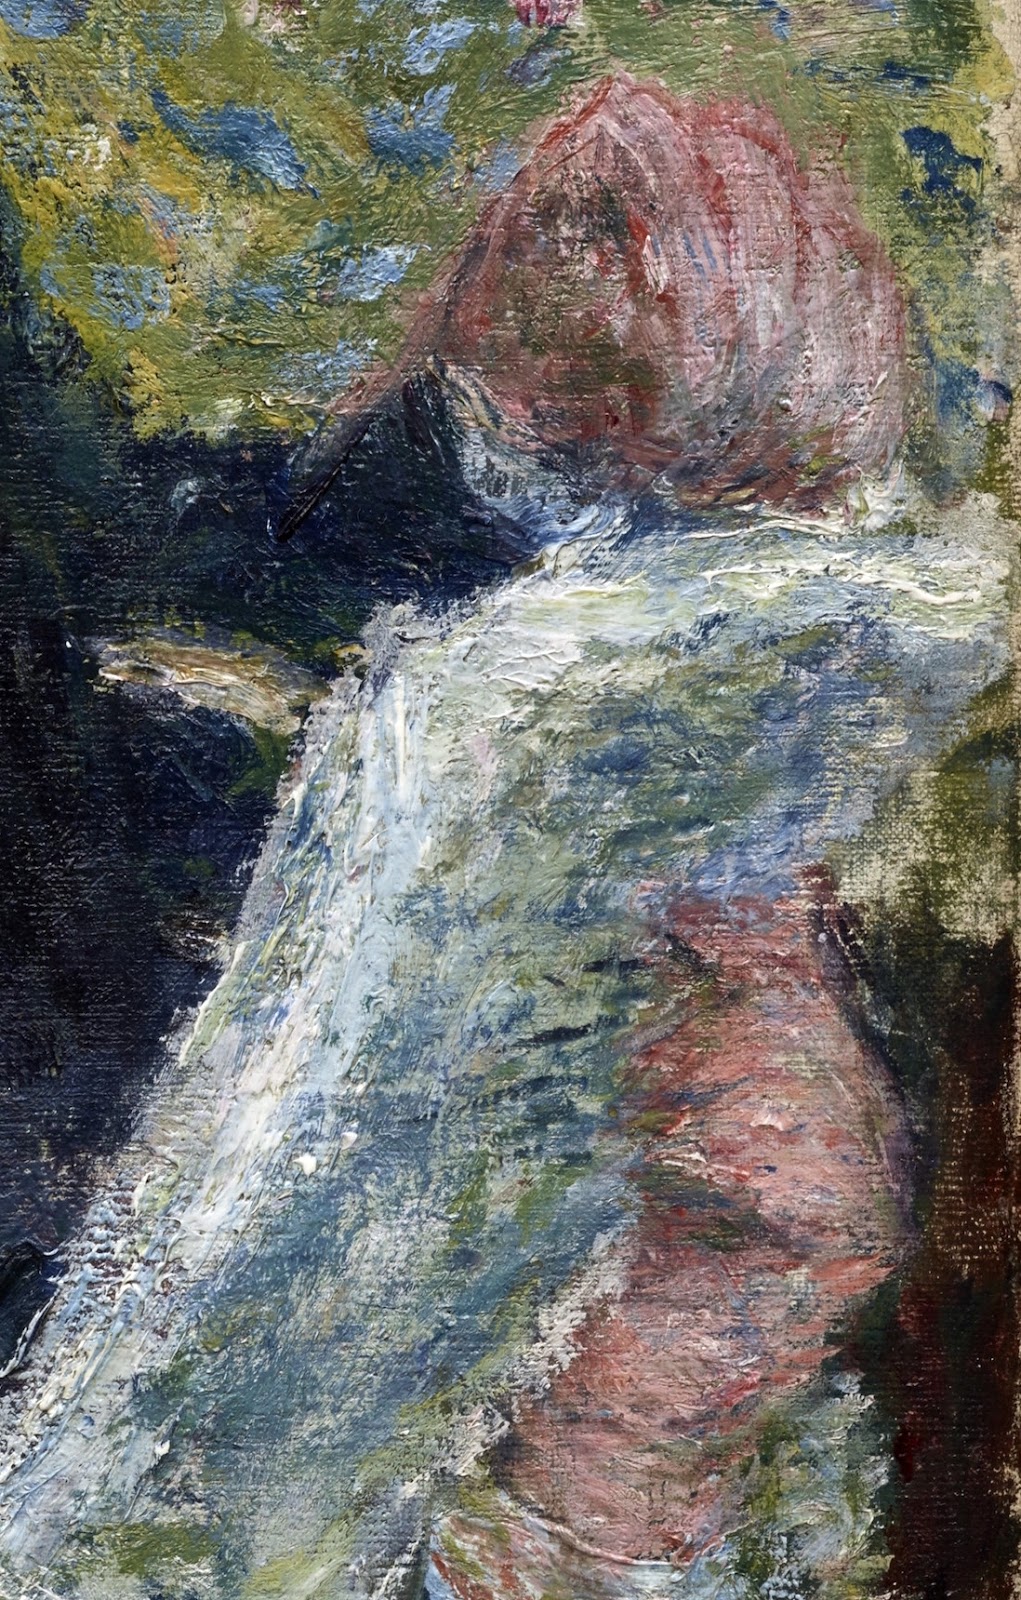 Pierre+Auguste+Renoir-1841-1-19 (972).jpg